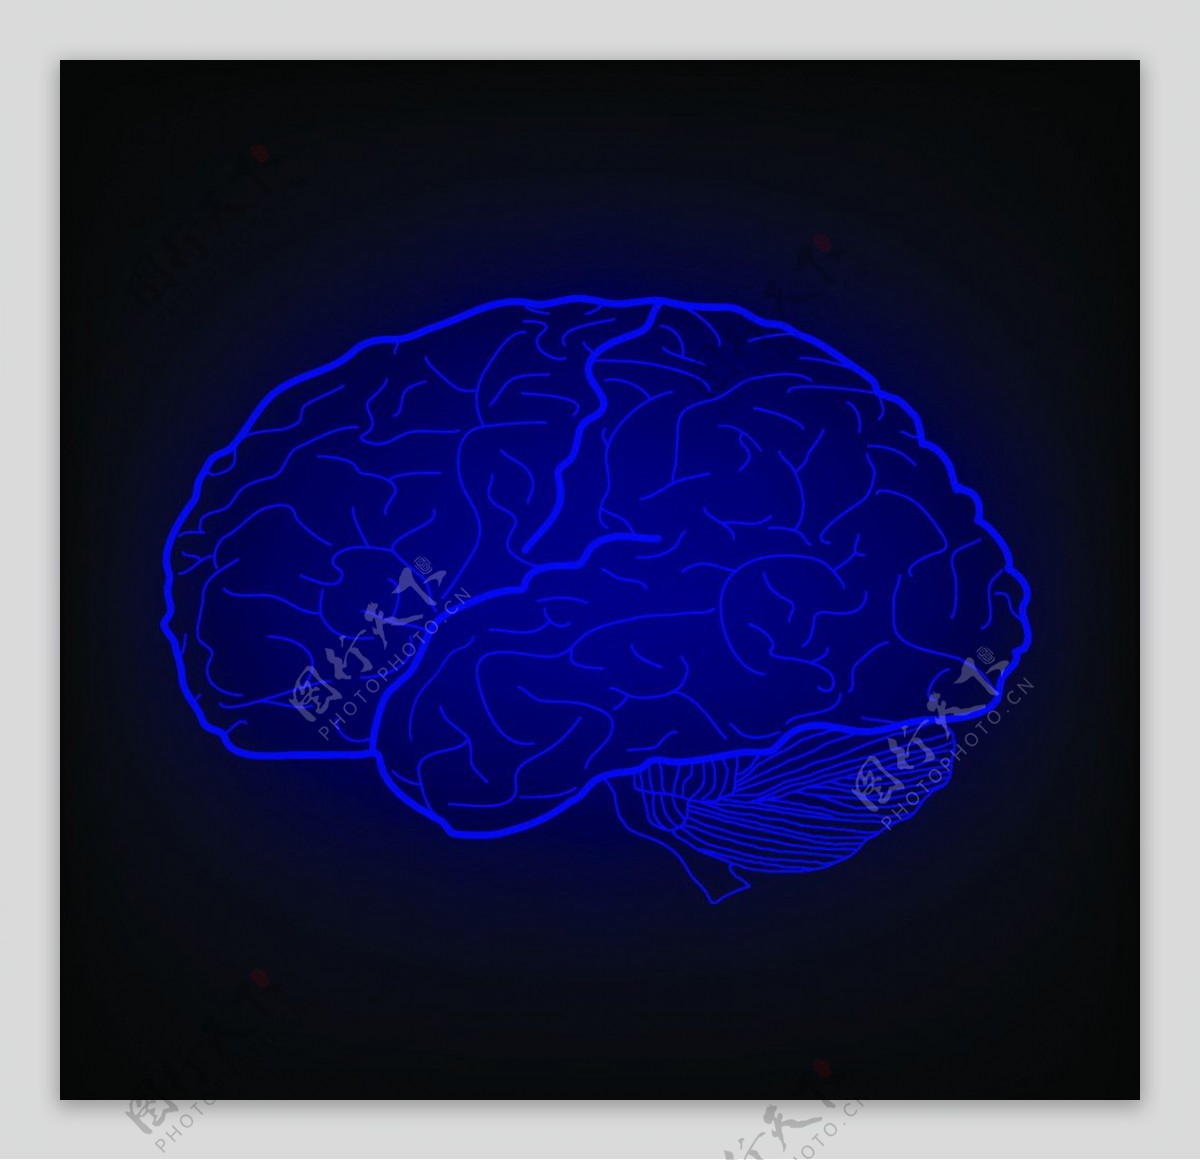 人脑图片